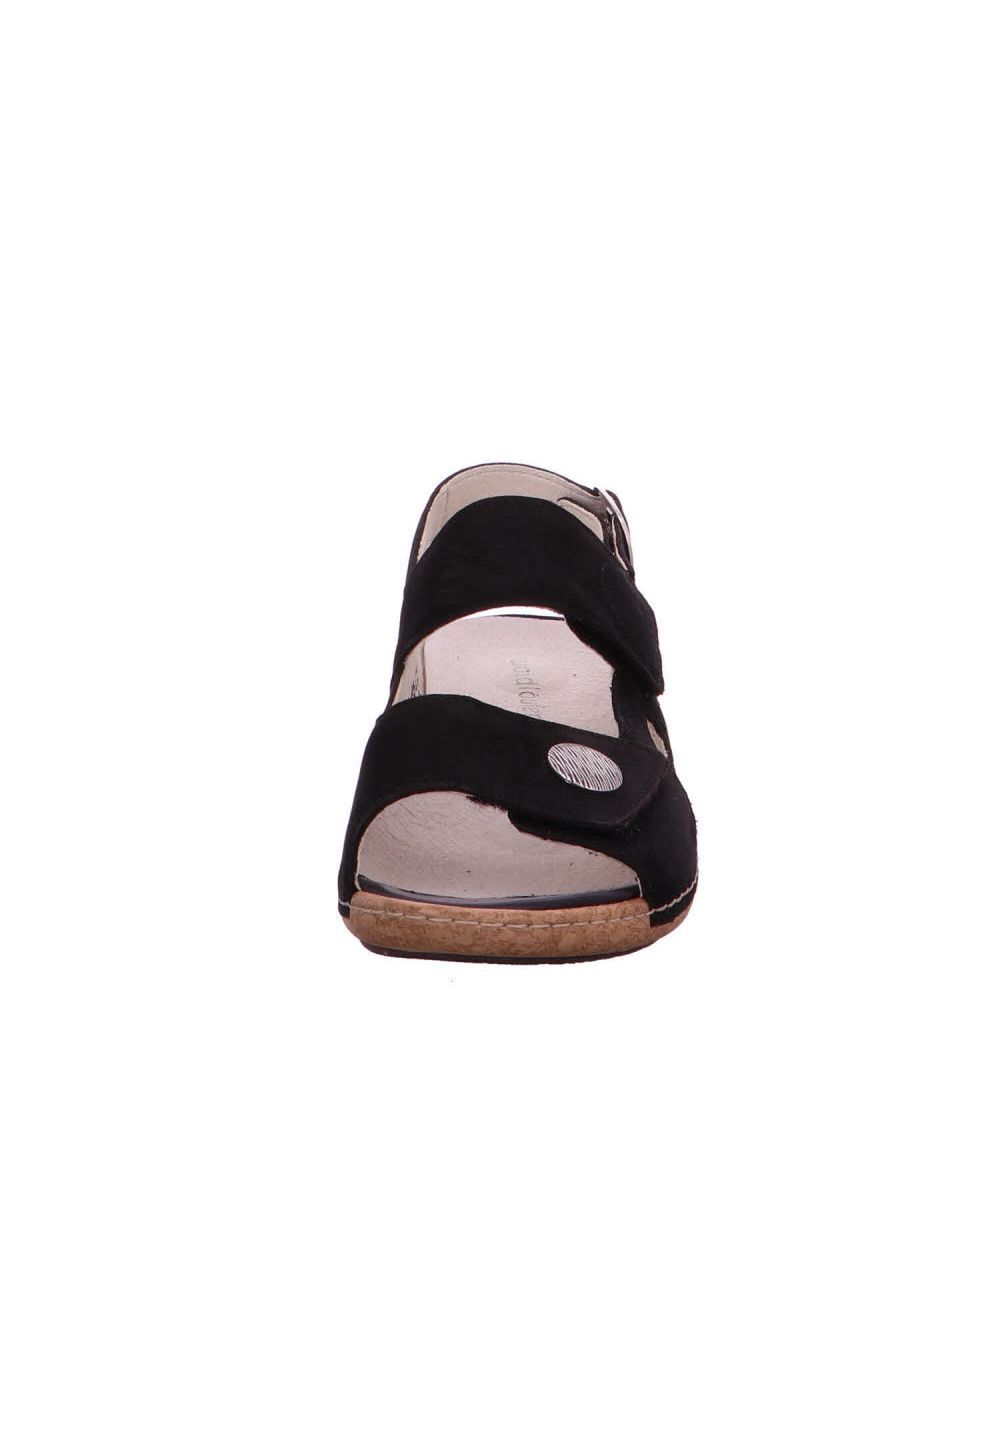 Damen Schuhe waldläufer® Sandale 342002 191 001